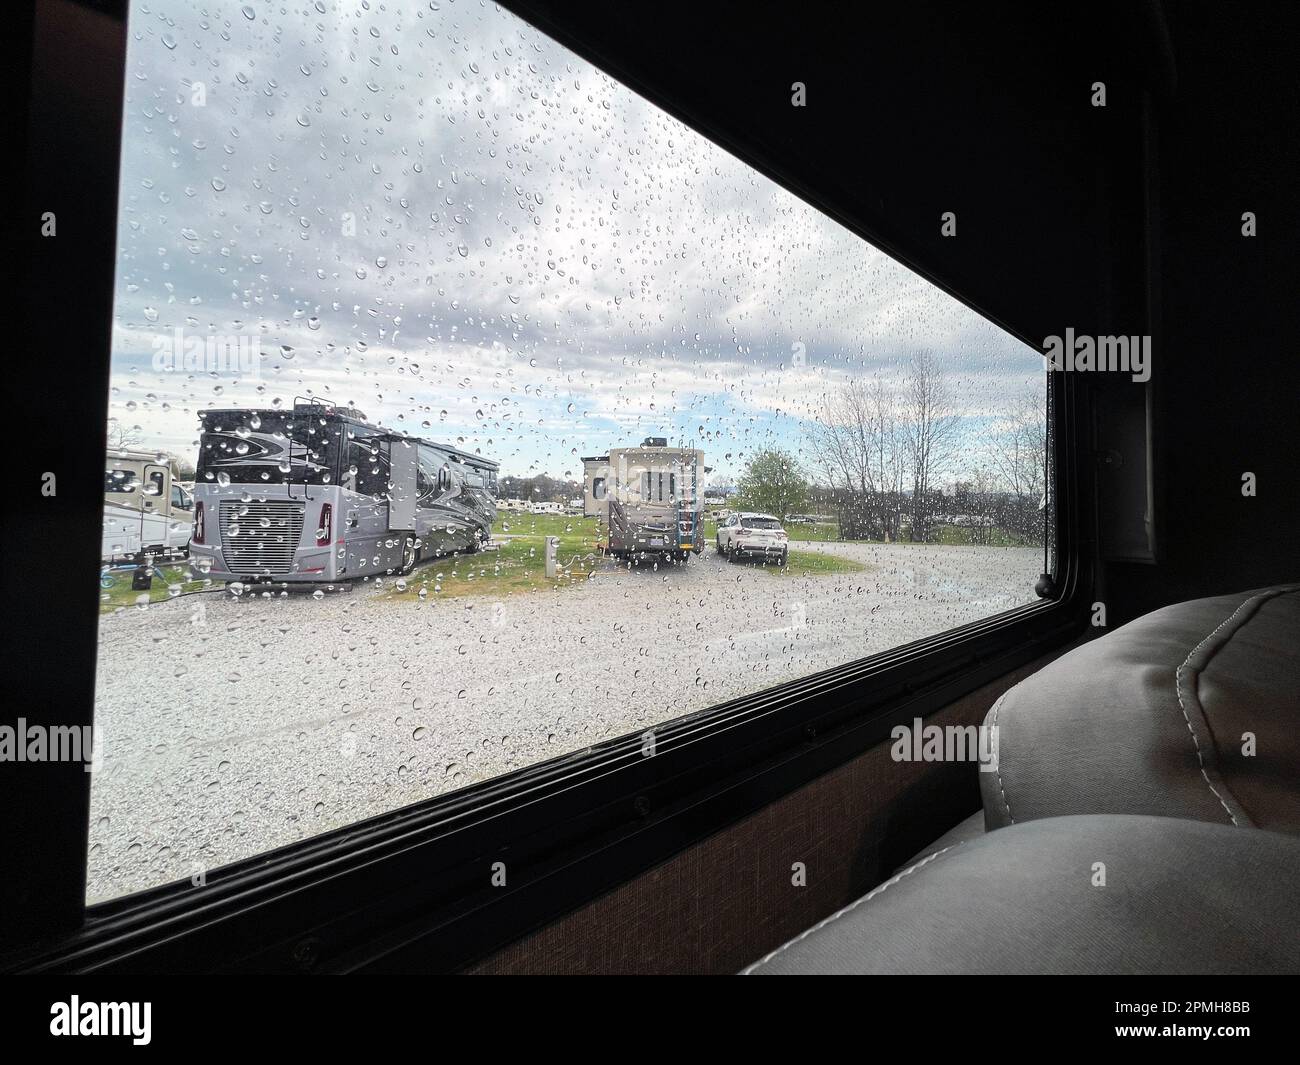 Ein regnerischer Tag auf dem Campingplatz mit Blick auf luxuriöse Freizeitfahrzeuge. Stockfoto